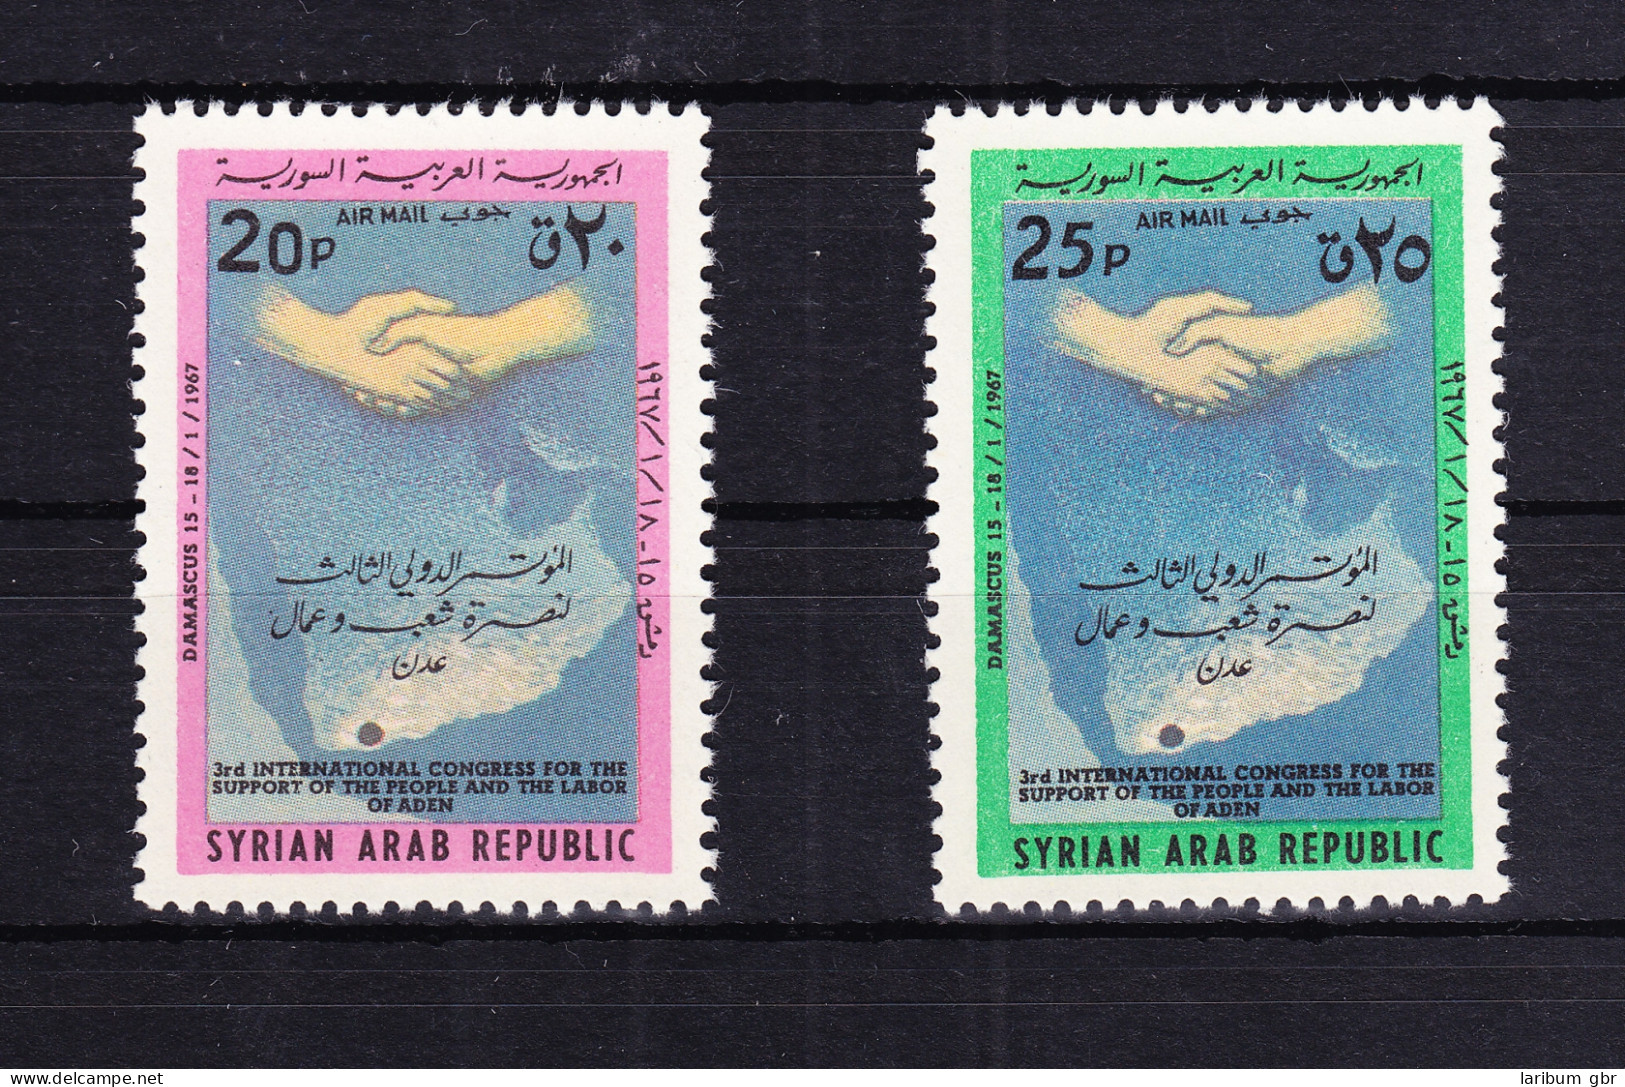 Syrien 959-960 Postfrisch Solidaritätskongreß Mit Aden, MNH #RB546 - Syrien